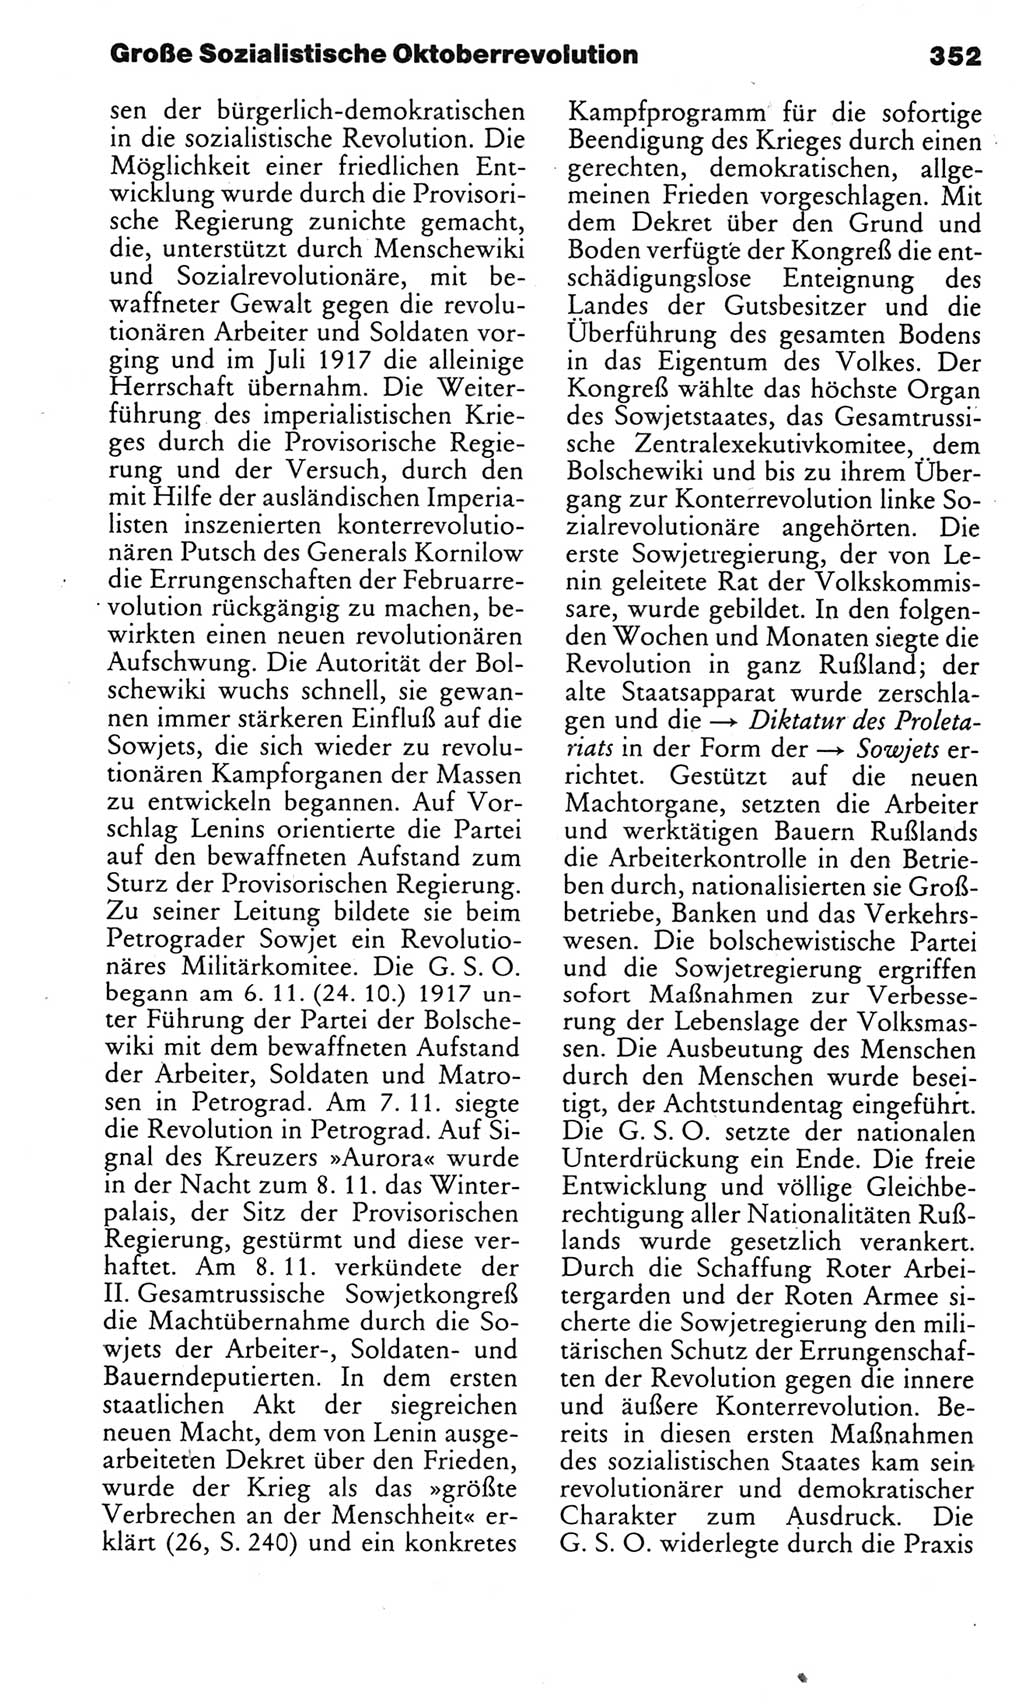 Kleines politisches Wörterbuch [Deutsche Demokratische Republik (DDR)] 1985, Seite 352 (Kl. pol. Wb. DDR 1985, S. 352)